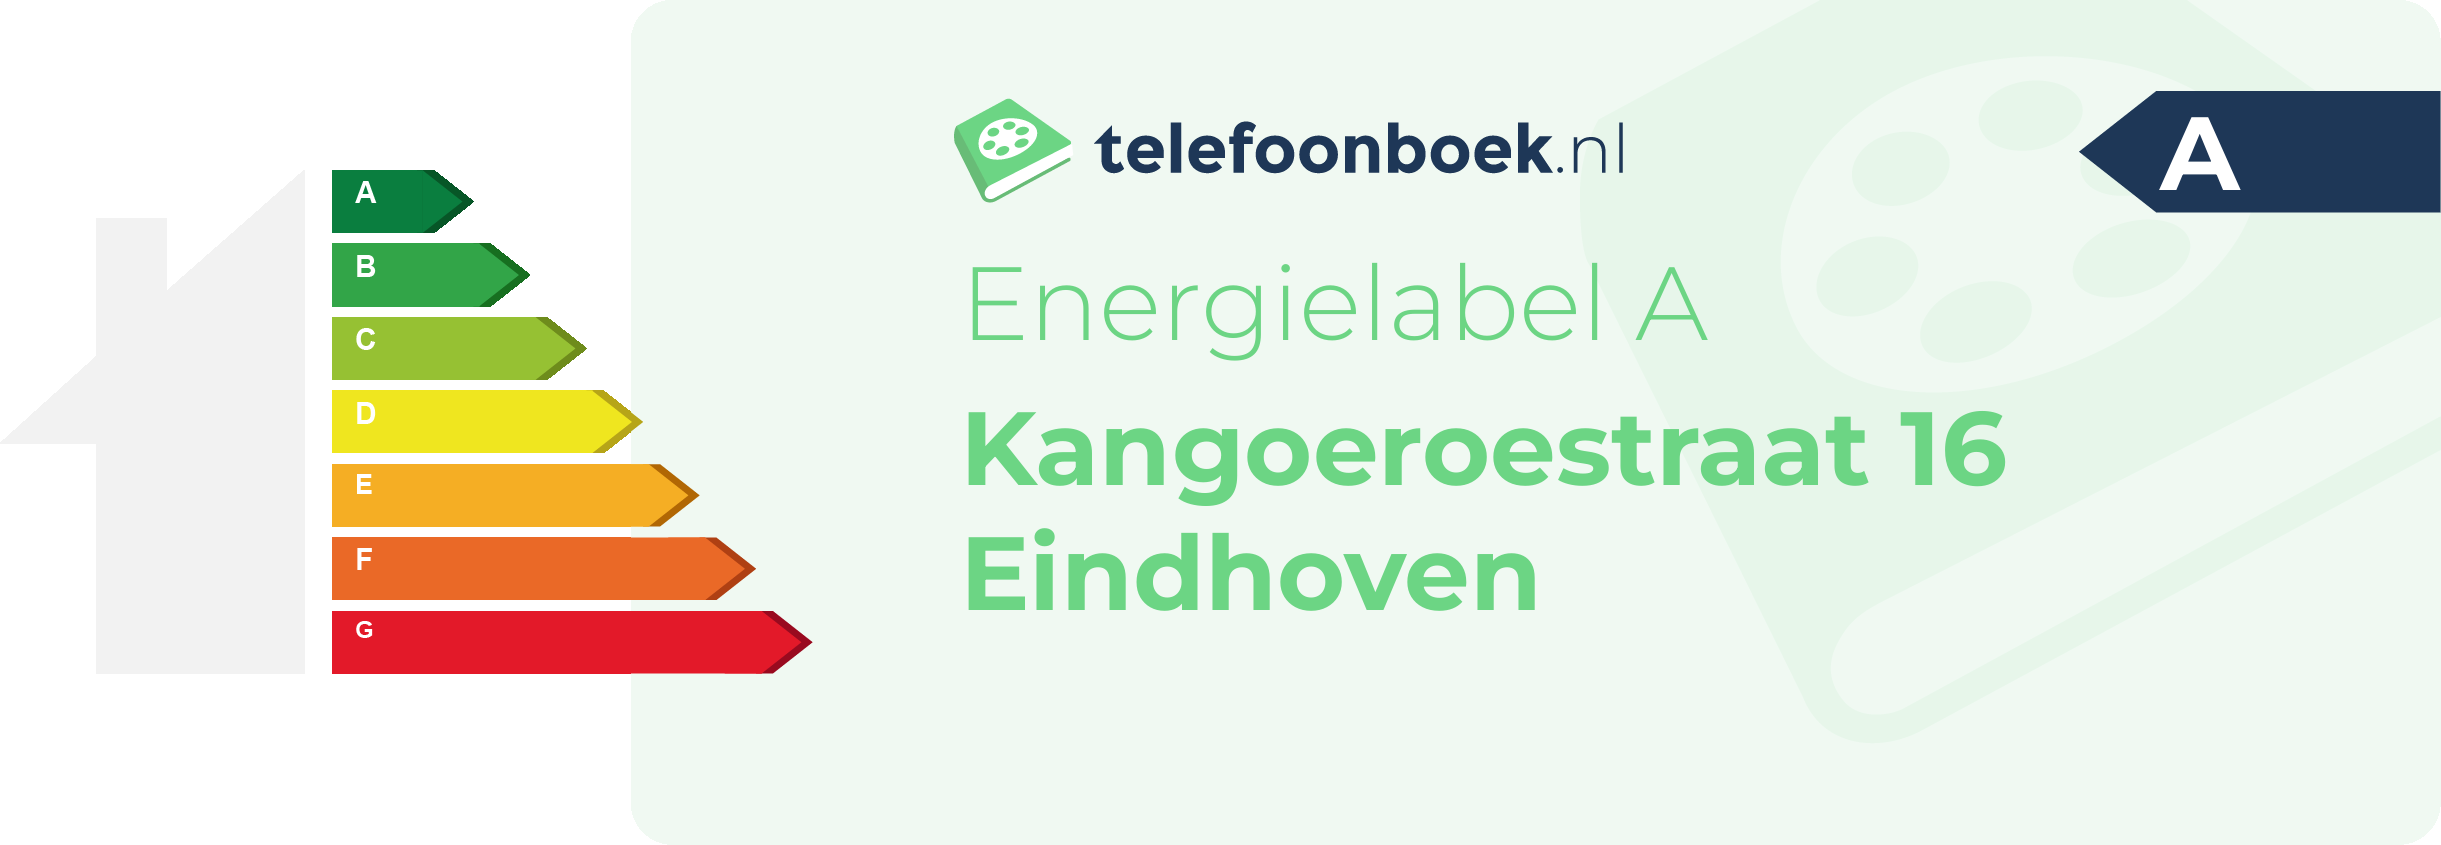 Energielabel Kangoeroestraat 16 Eindhoven